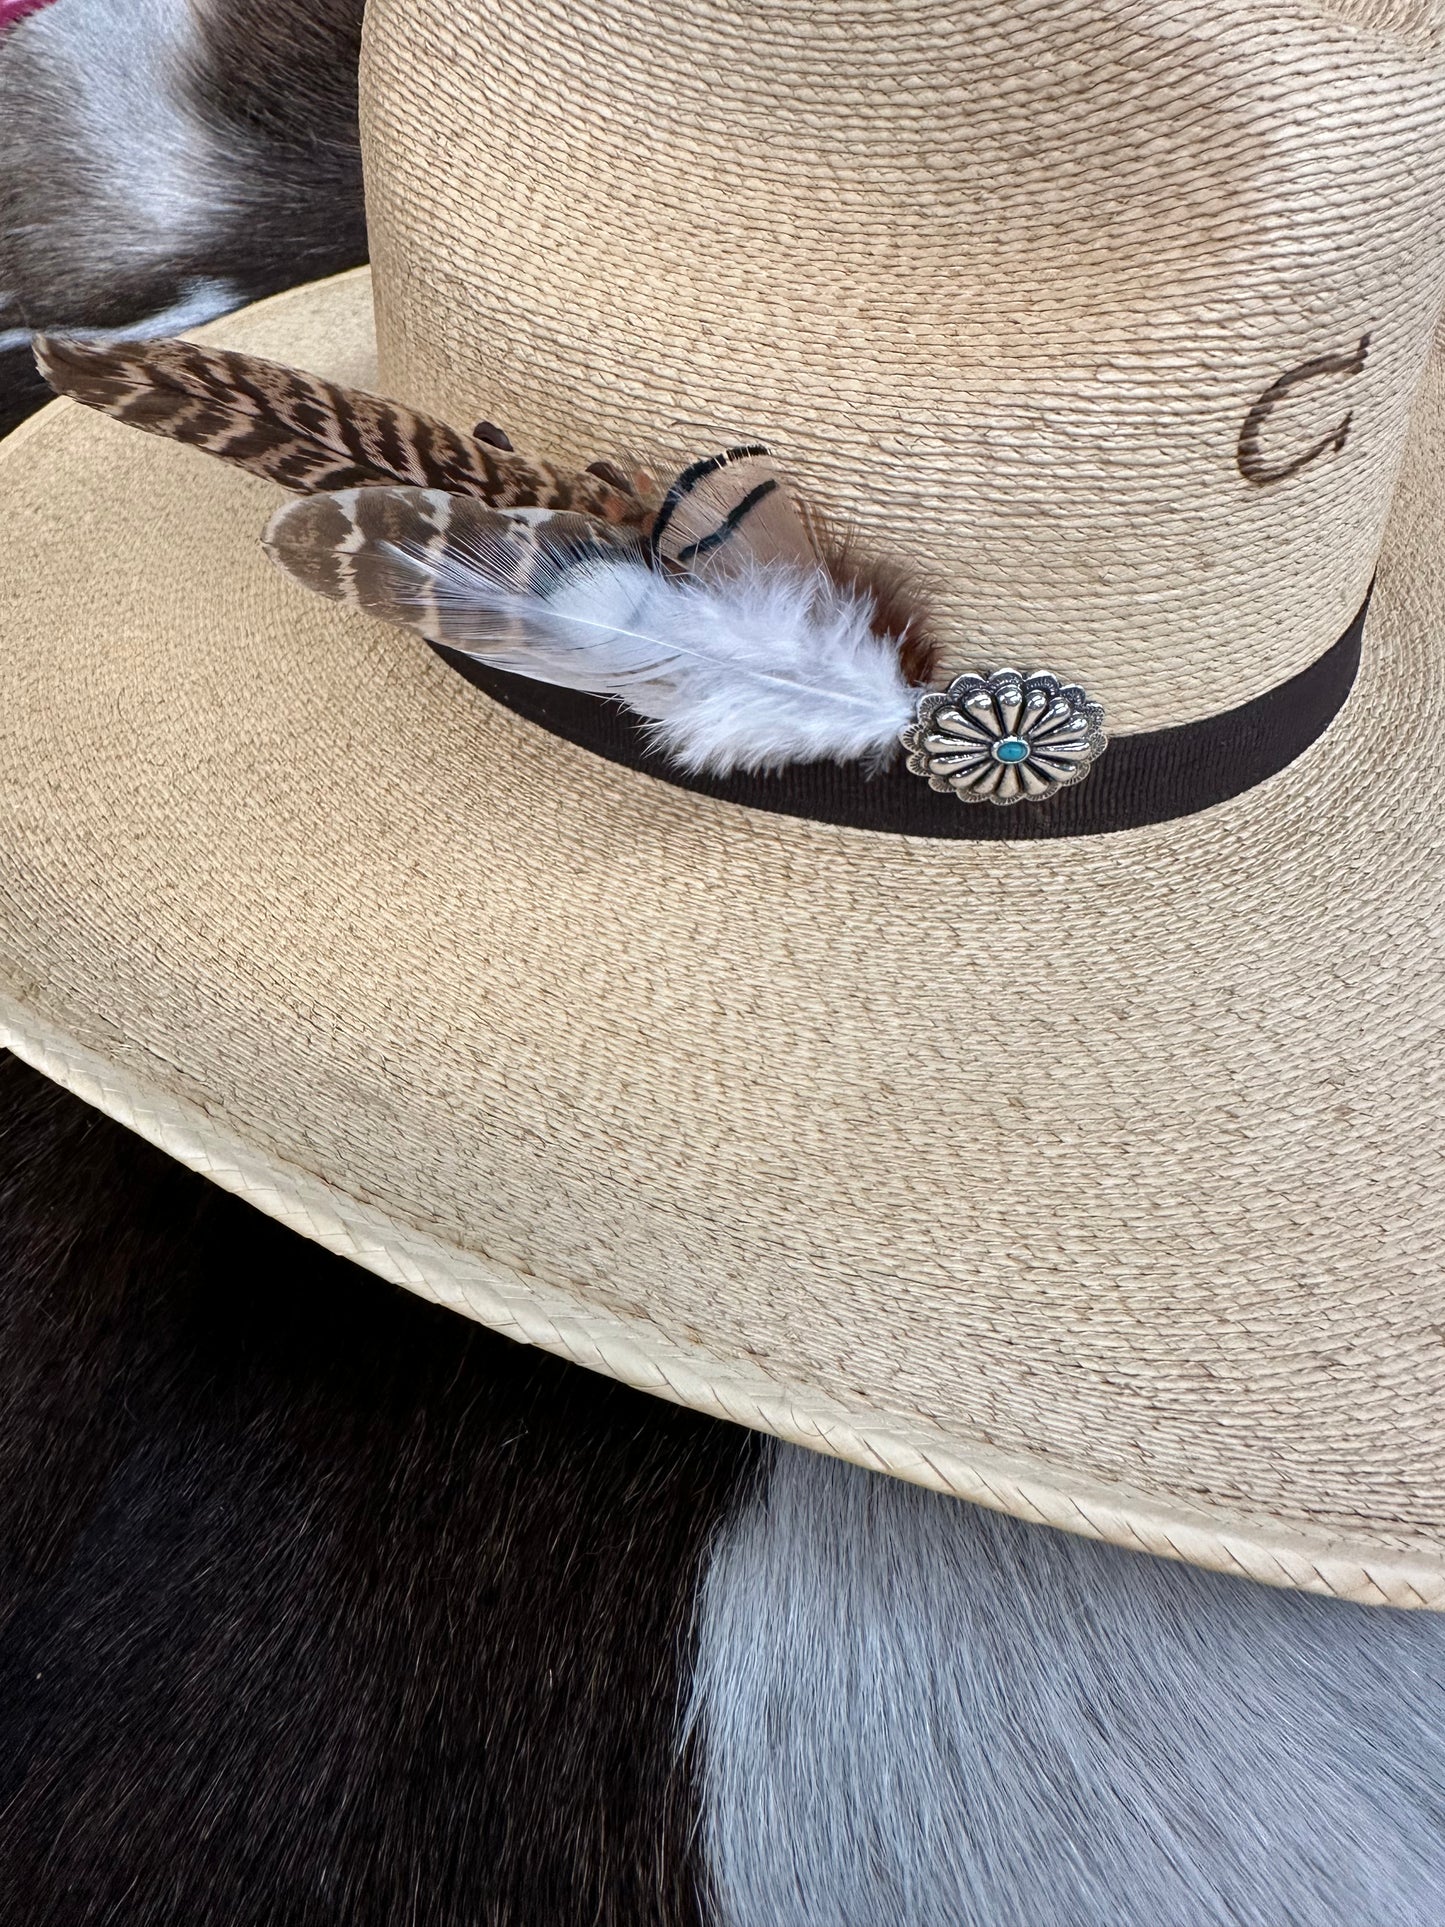 The Feelin' Fancy Feather Hat Pin